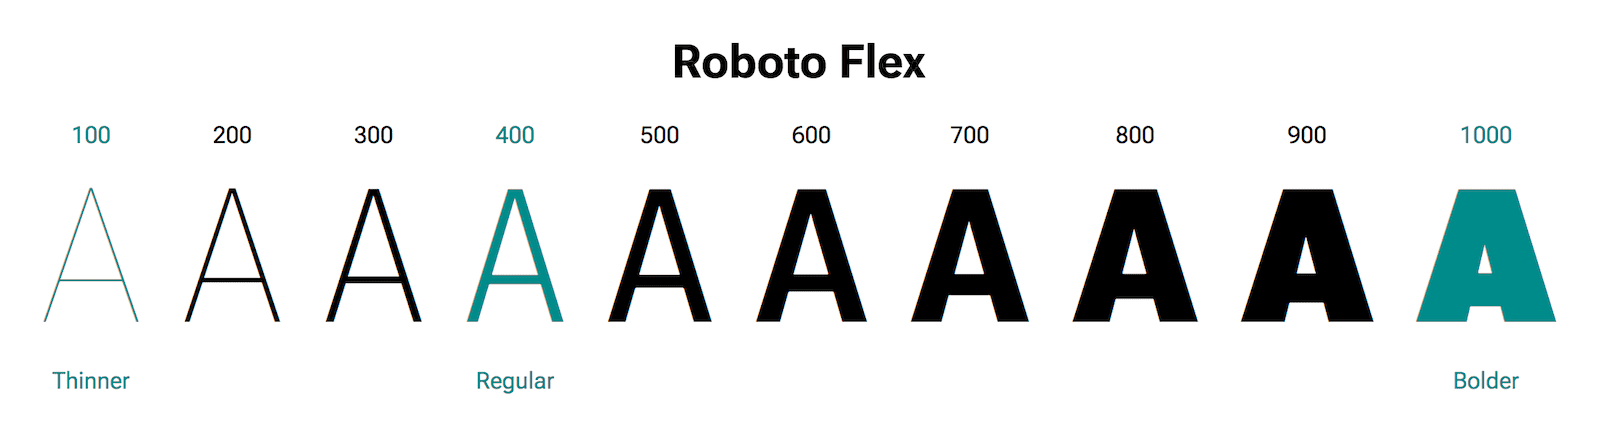 האות A מוצגת במשקלים שונים.